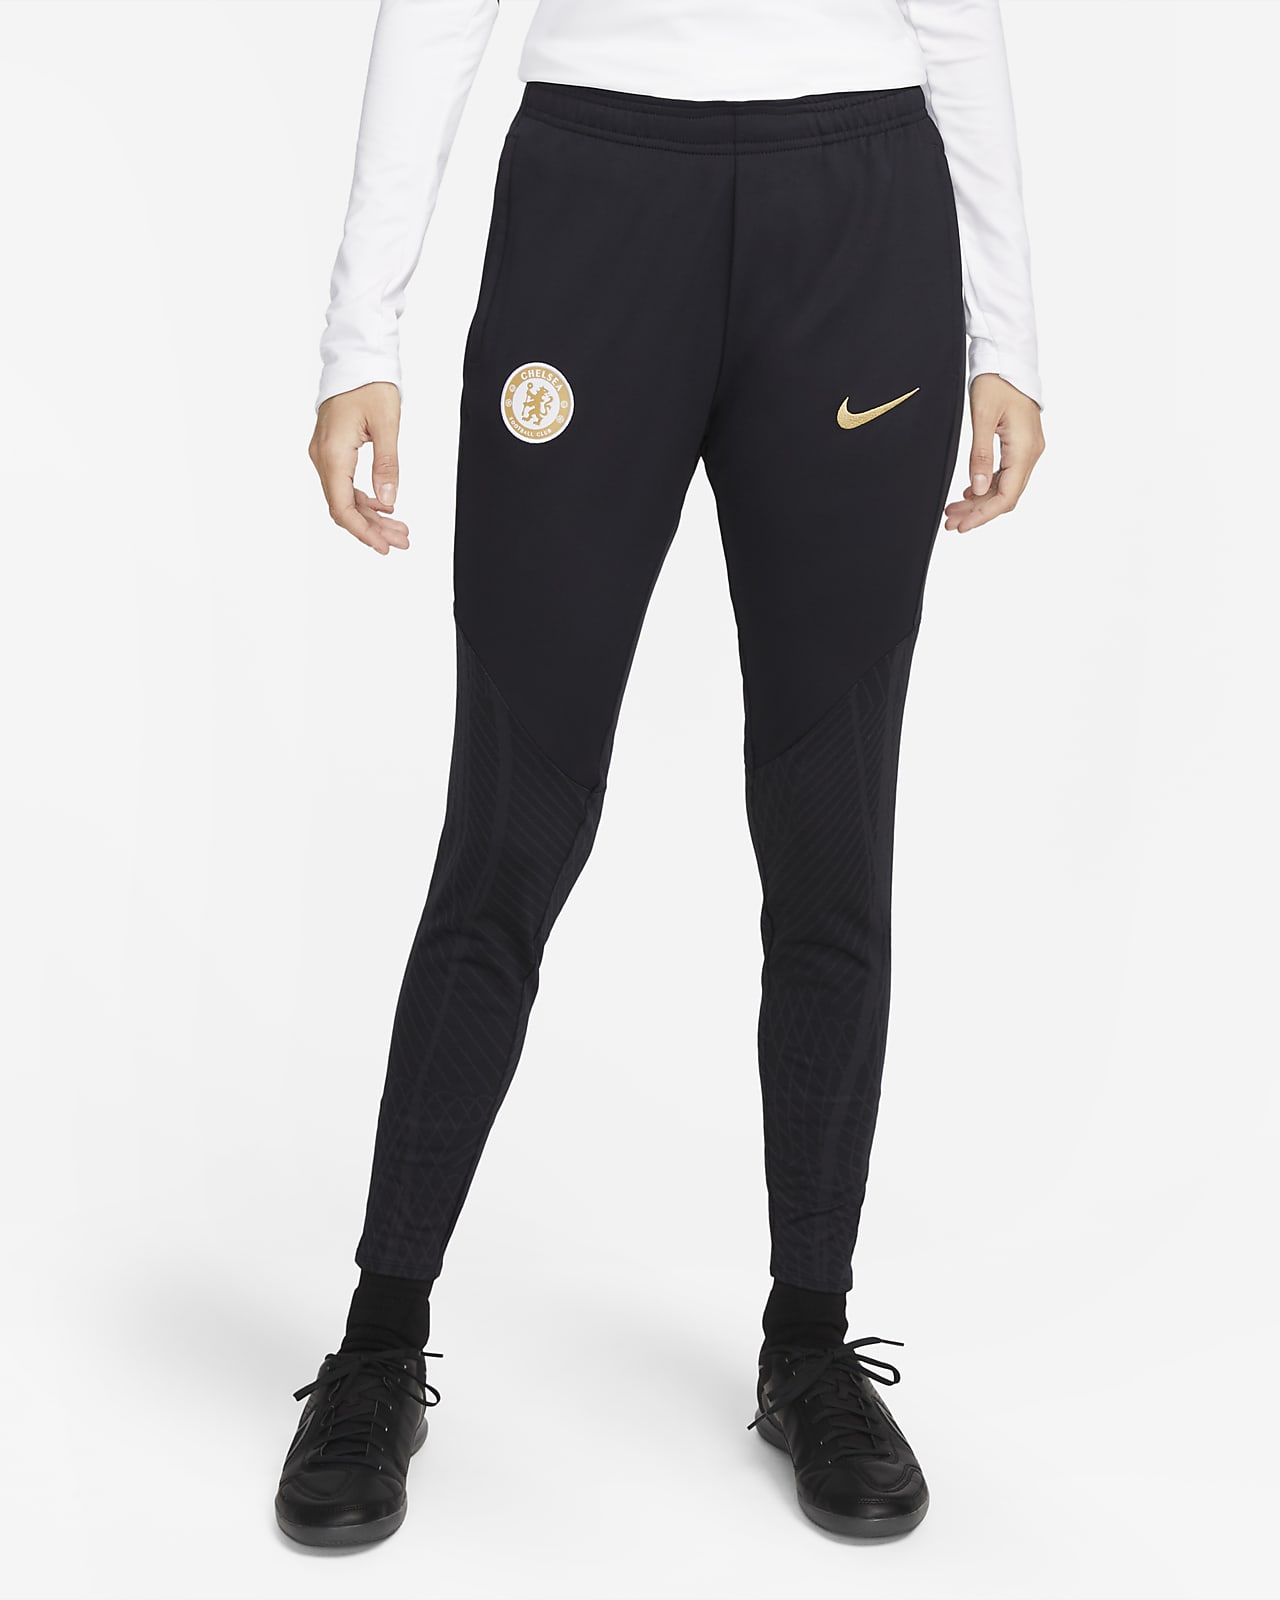 Nike Track Pants & Joggers for Women - Poshmark